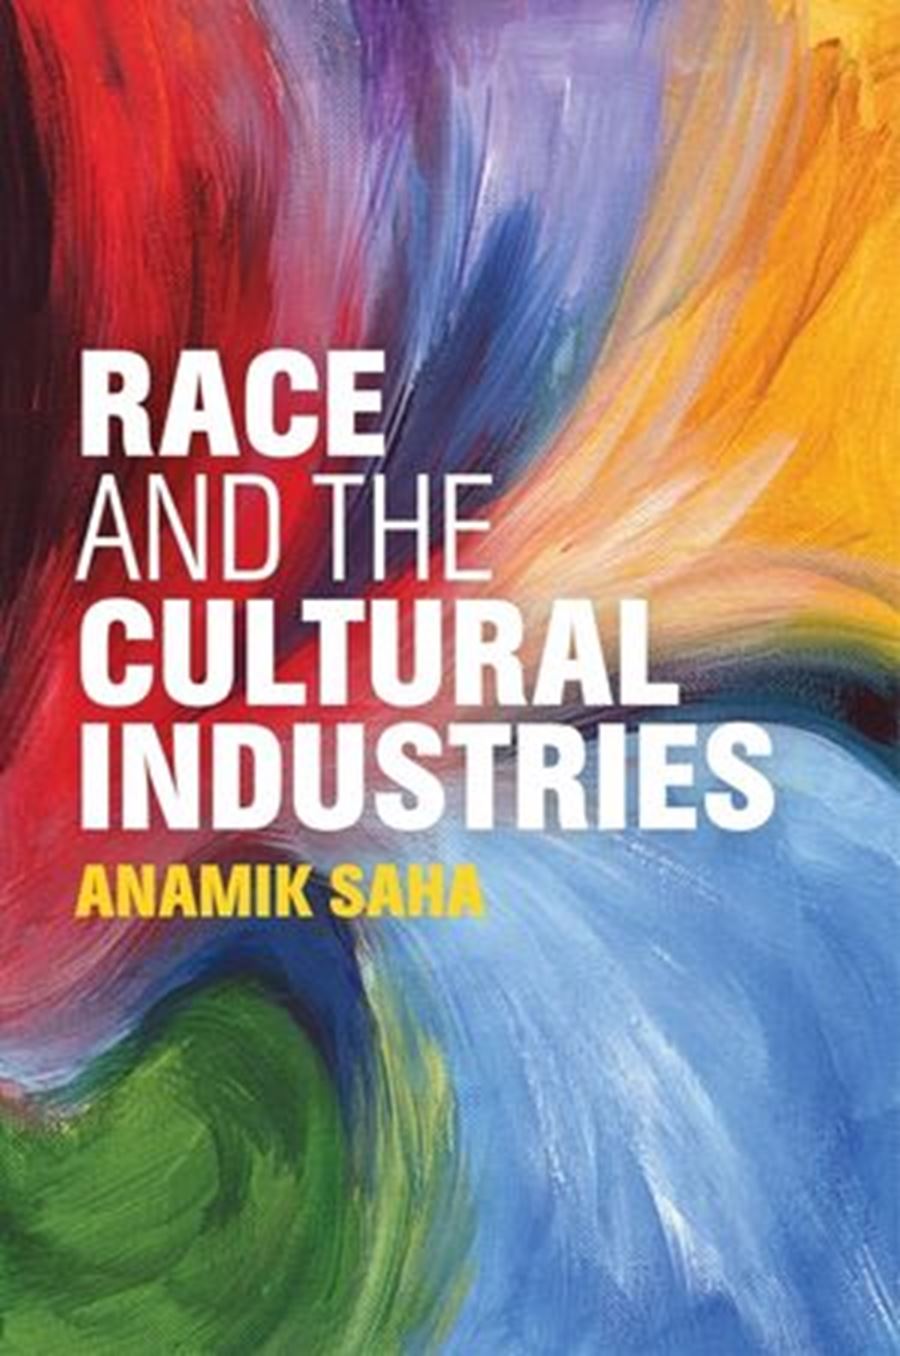 Dr Anamik Saha on diversity, media and racial capitalism